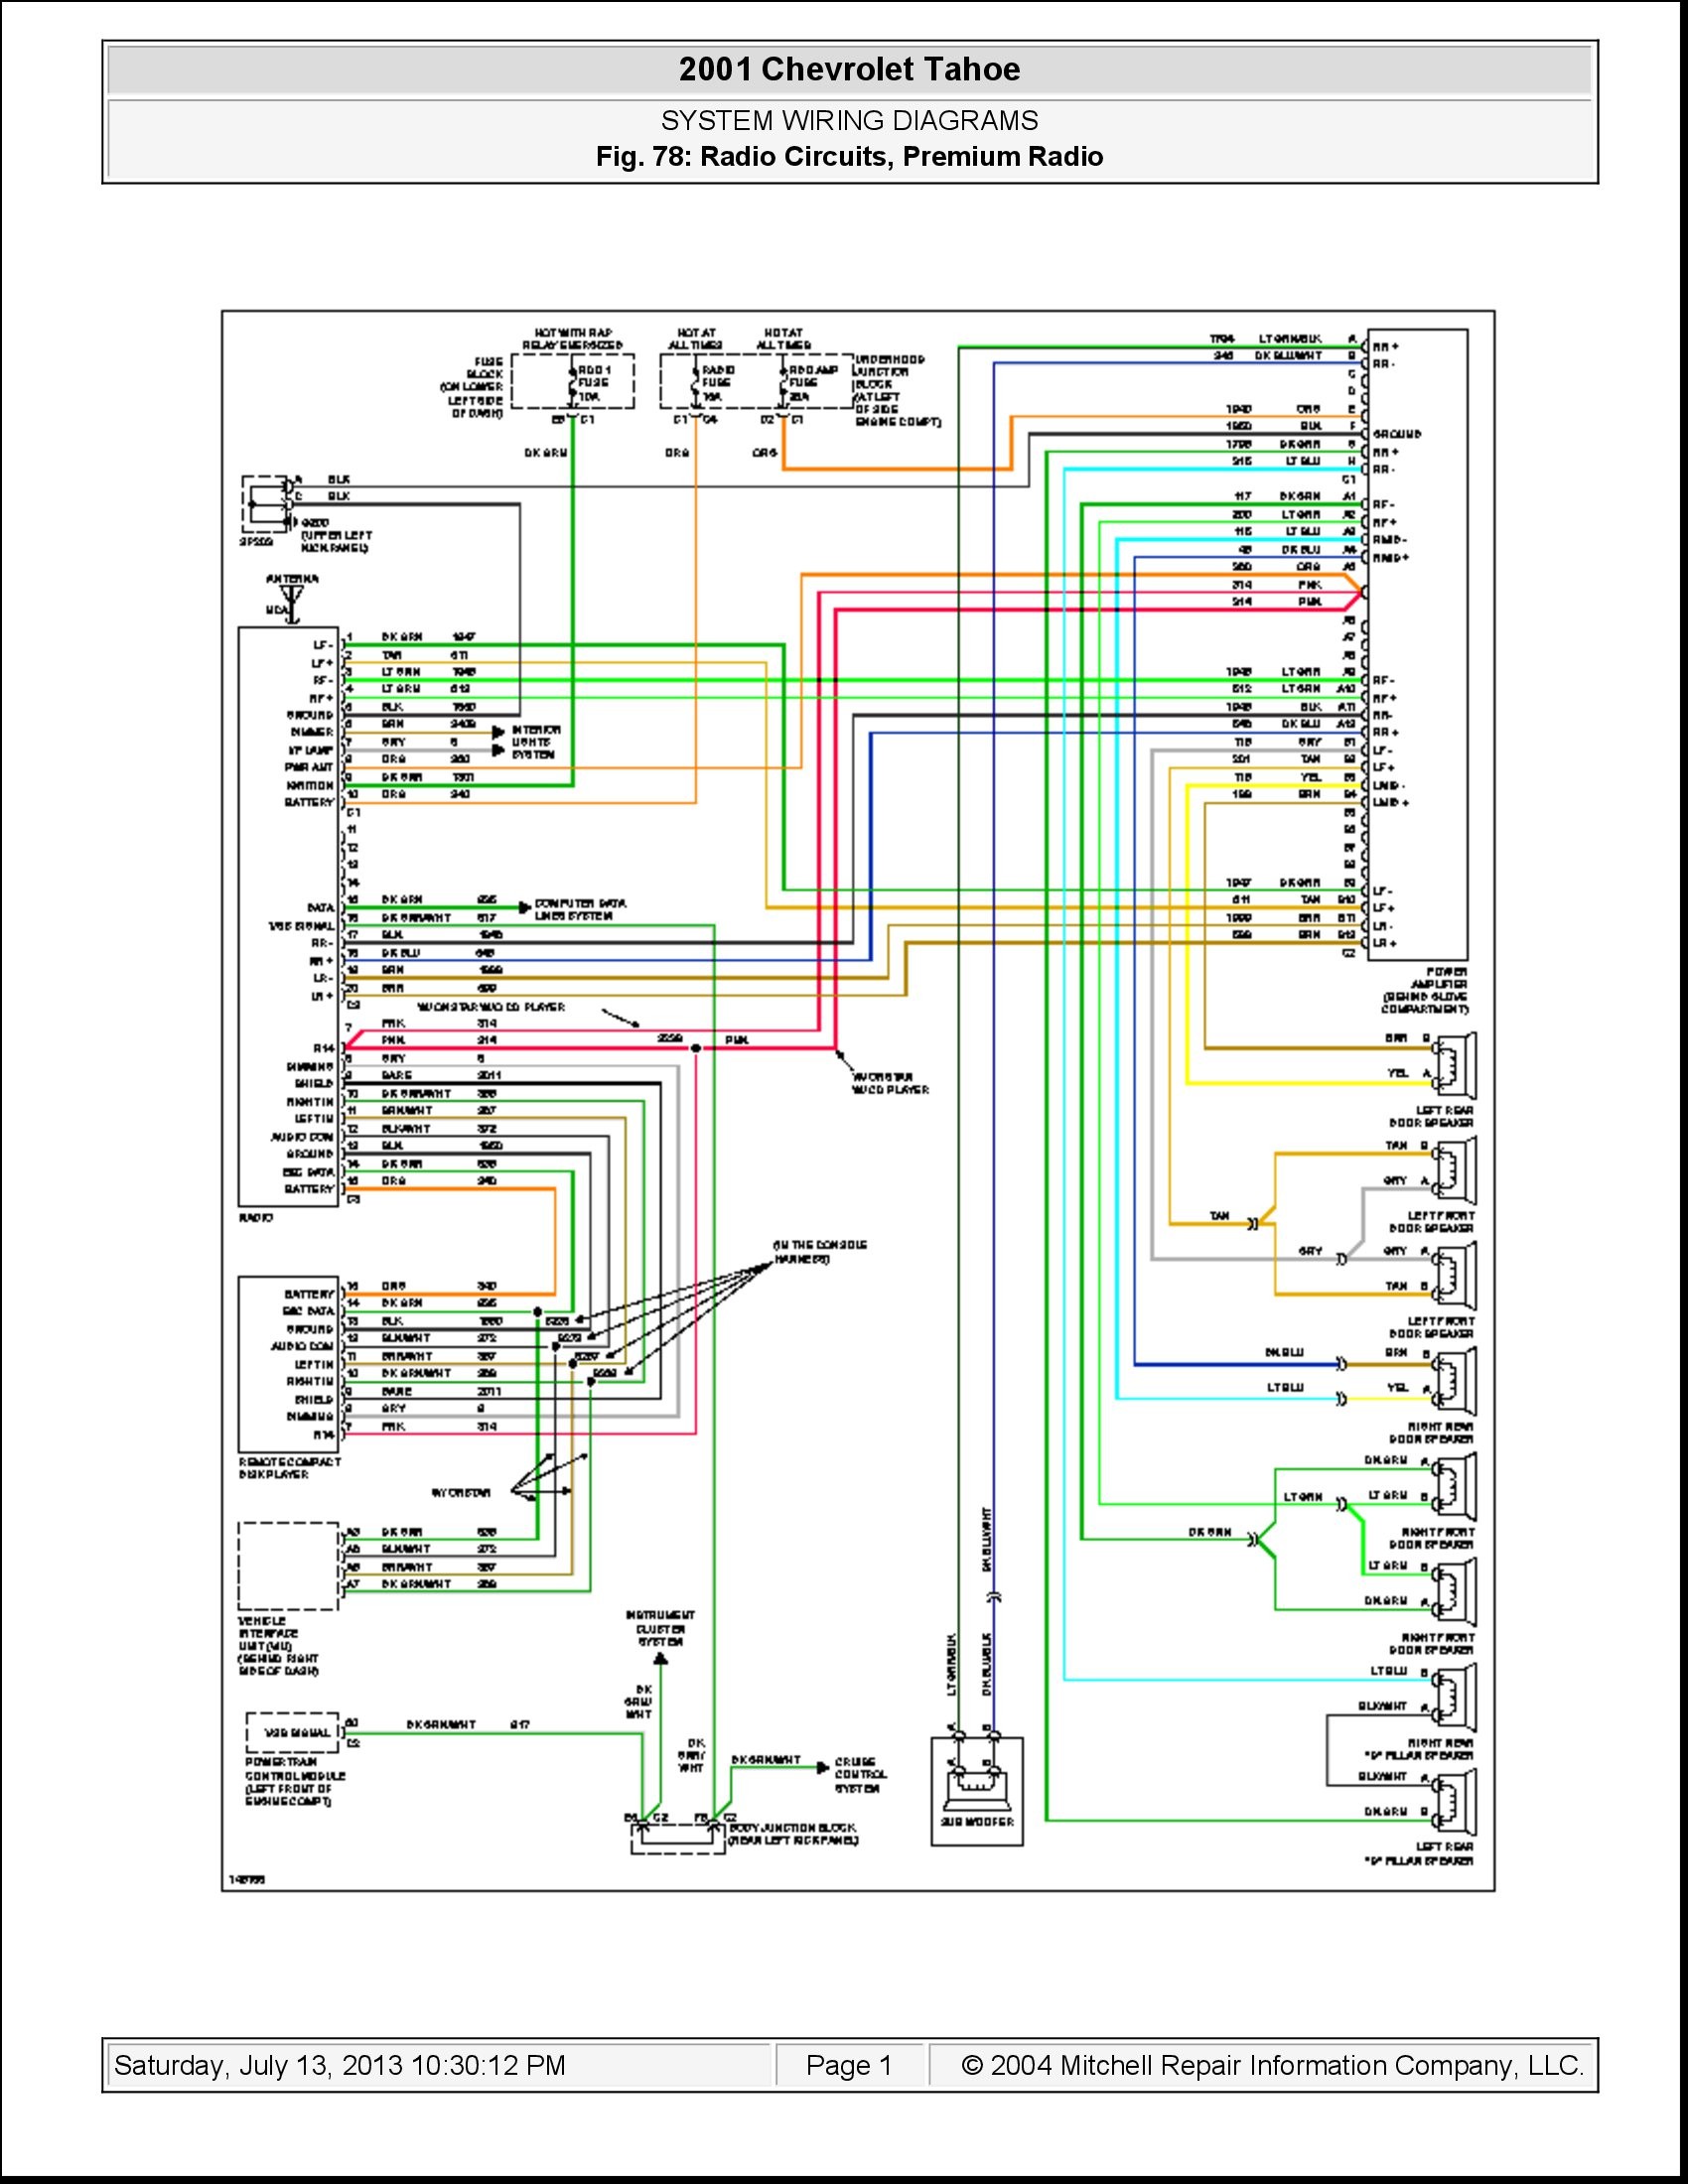 Ouku Car Dvd Player Wiring Diagram Dvd Wiring Diagram Wiring Diagram for You Of Ouku Car Dvd Player Wiring Diagram